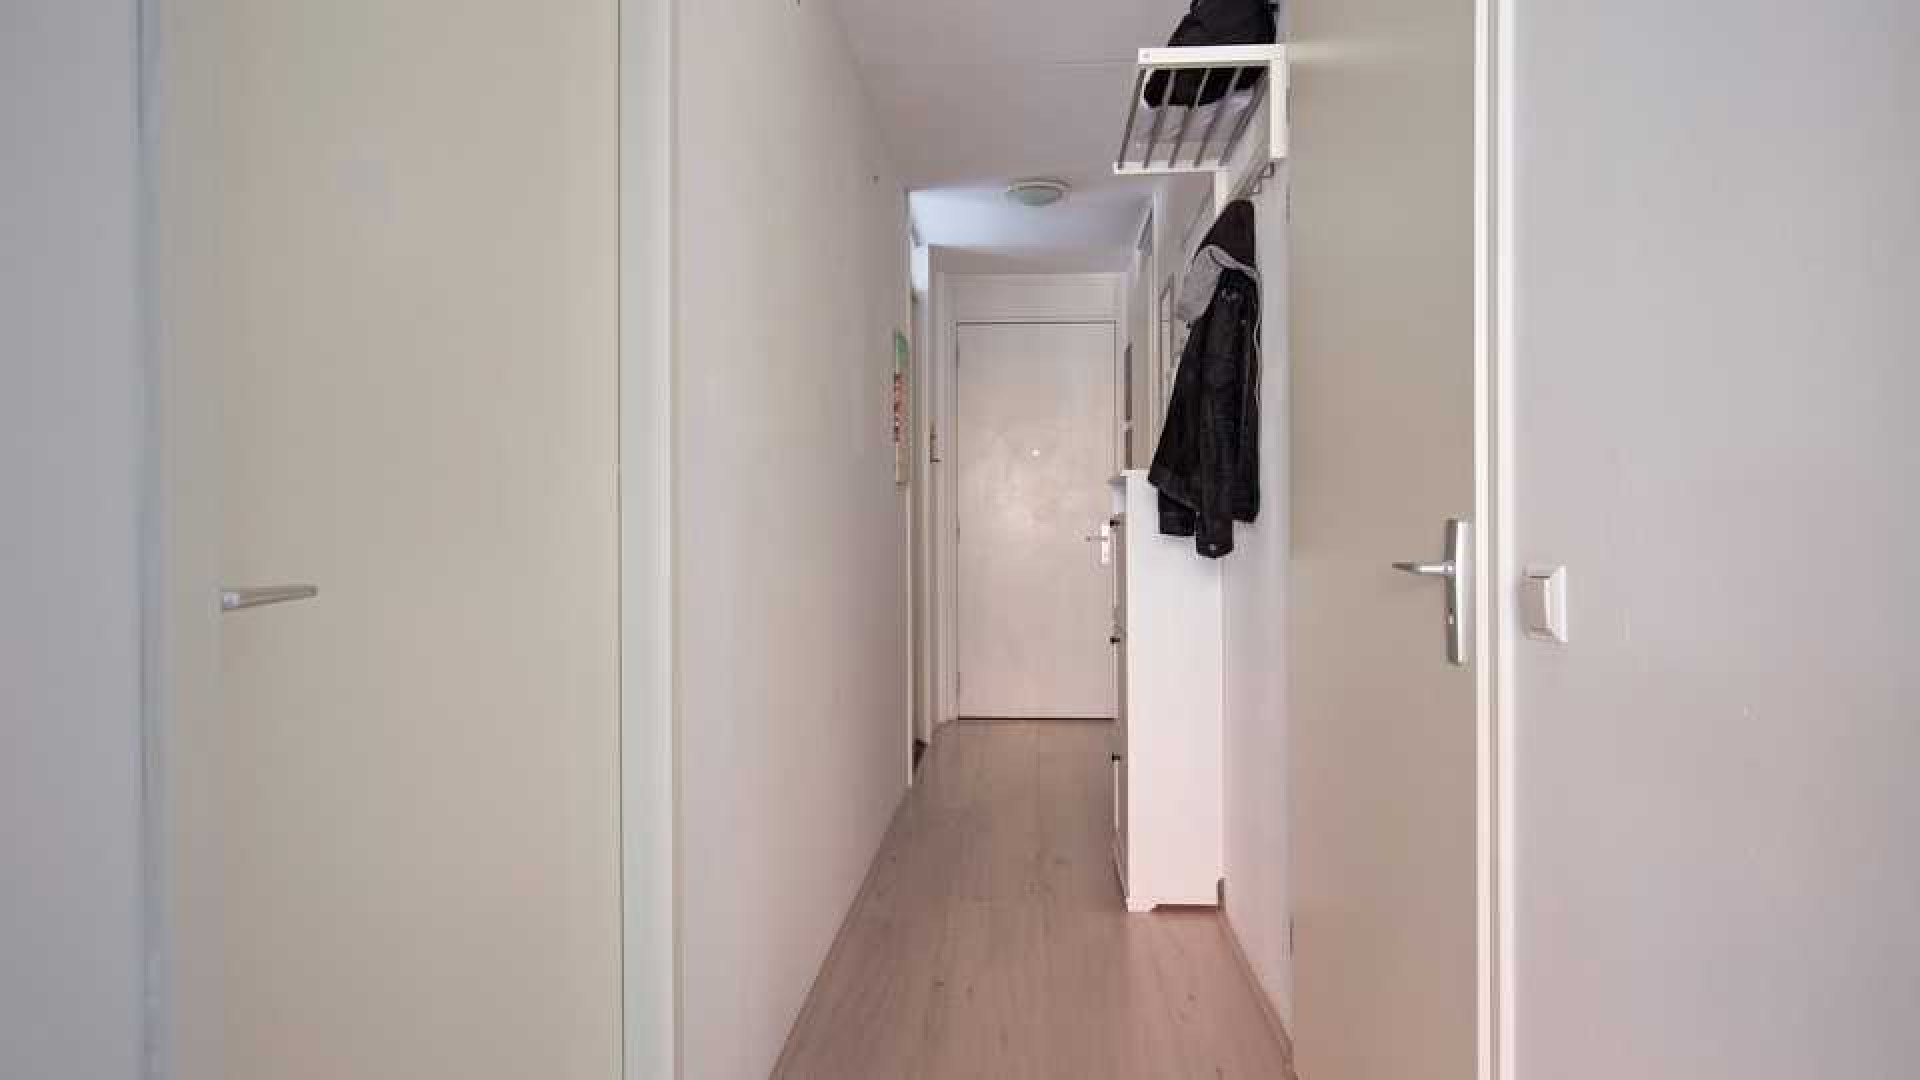 Dave Roelvink koopt eigen appartement in Landsmeer. Zie foto's